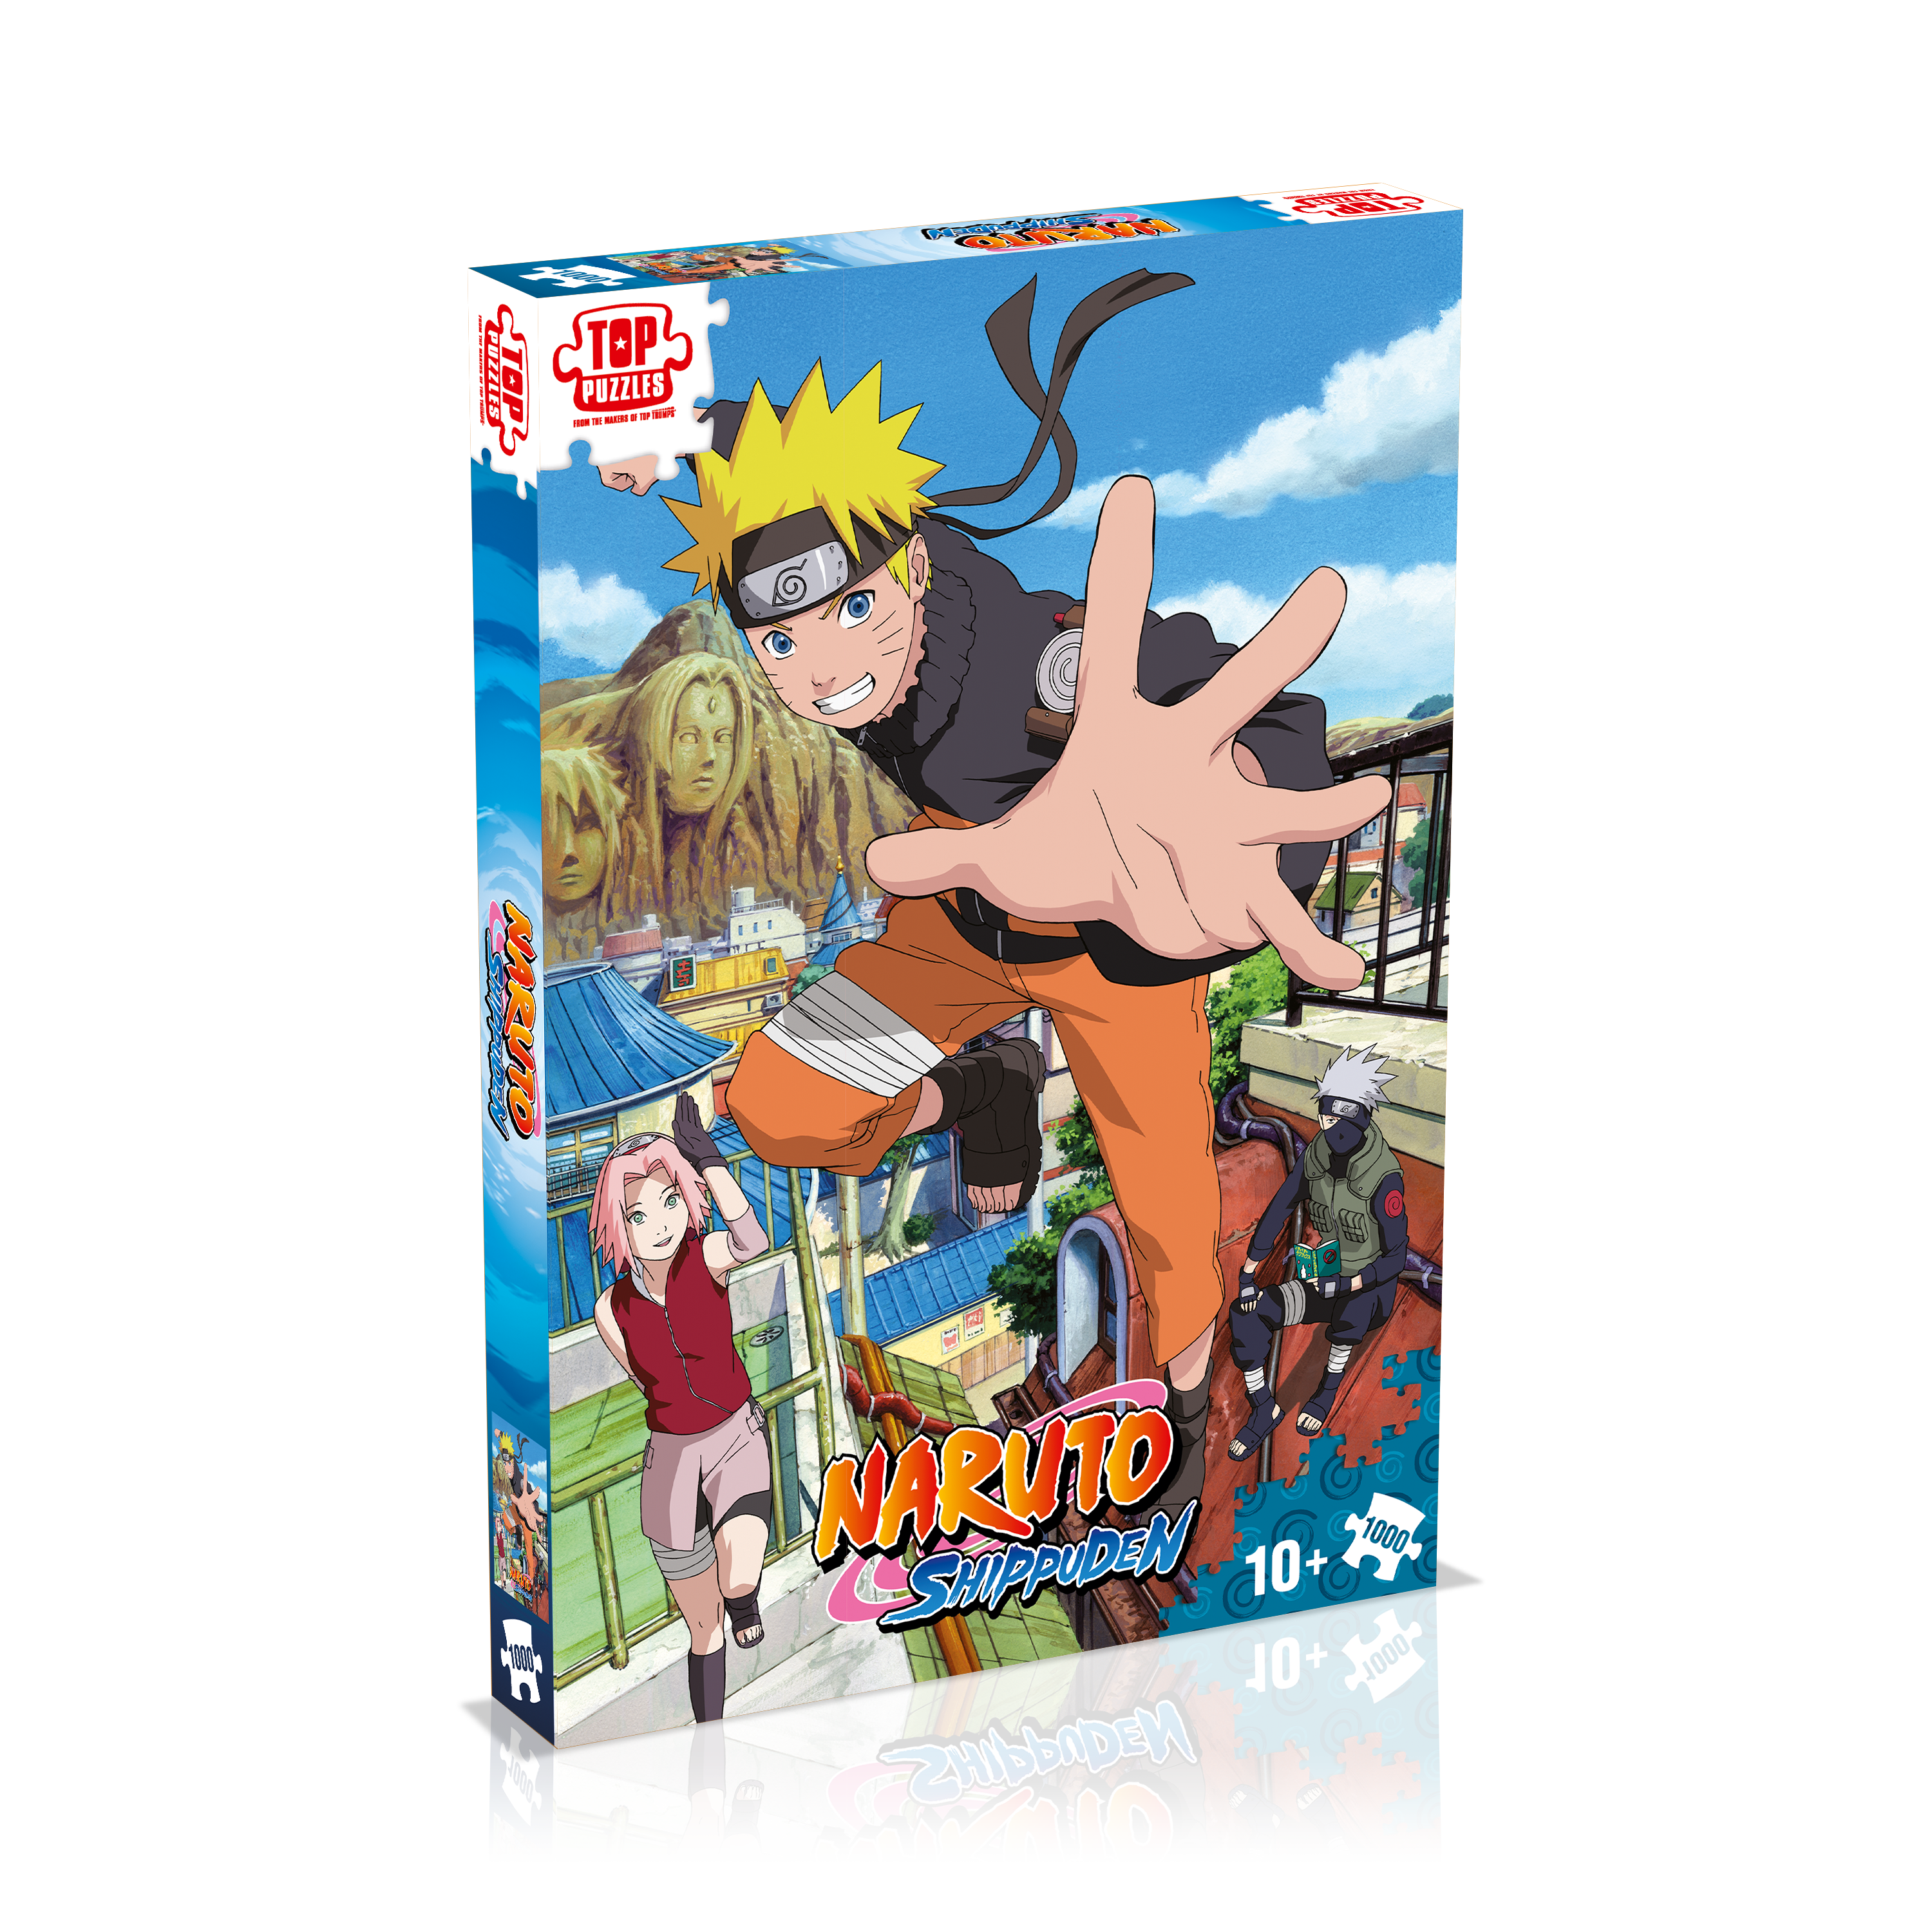 Naruto Shippuden - Puzzle 500 pièces - 8 ans et plus